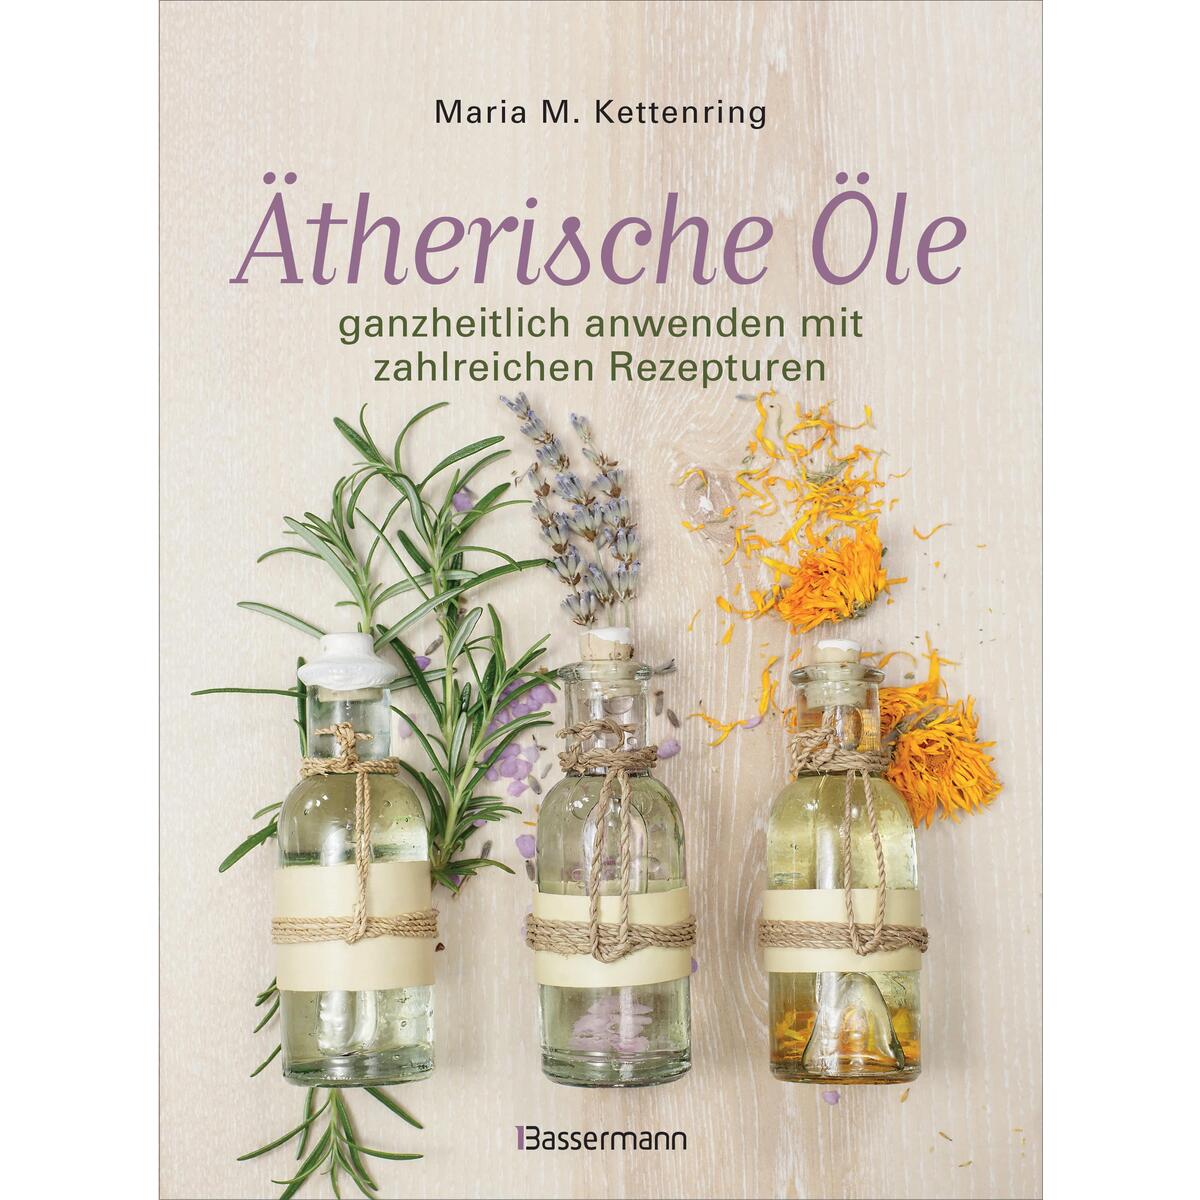 Ätherische Öle von Bassermann, Edition